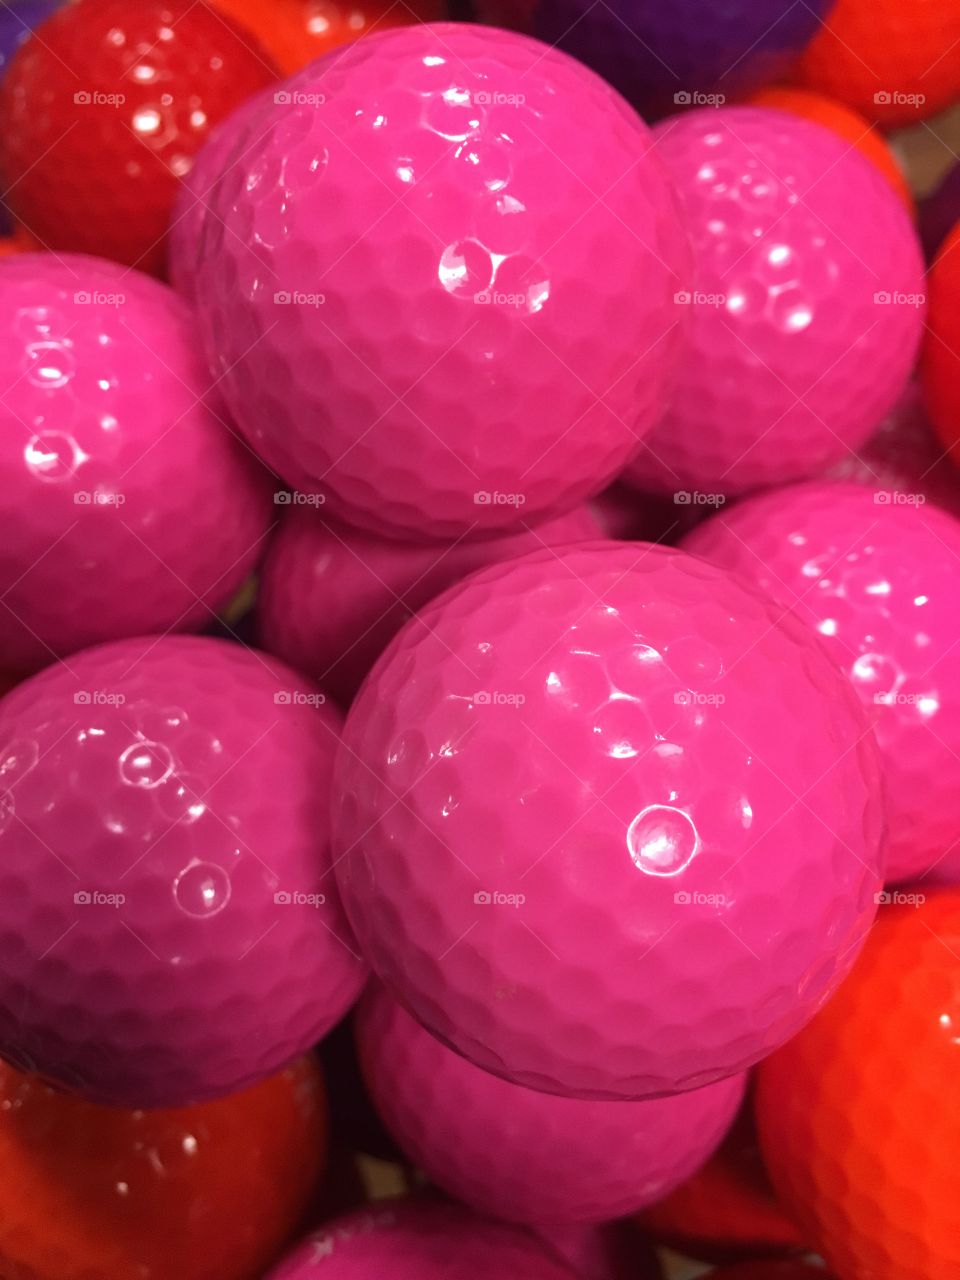 Pink souvenir golf balls